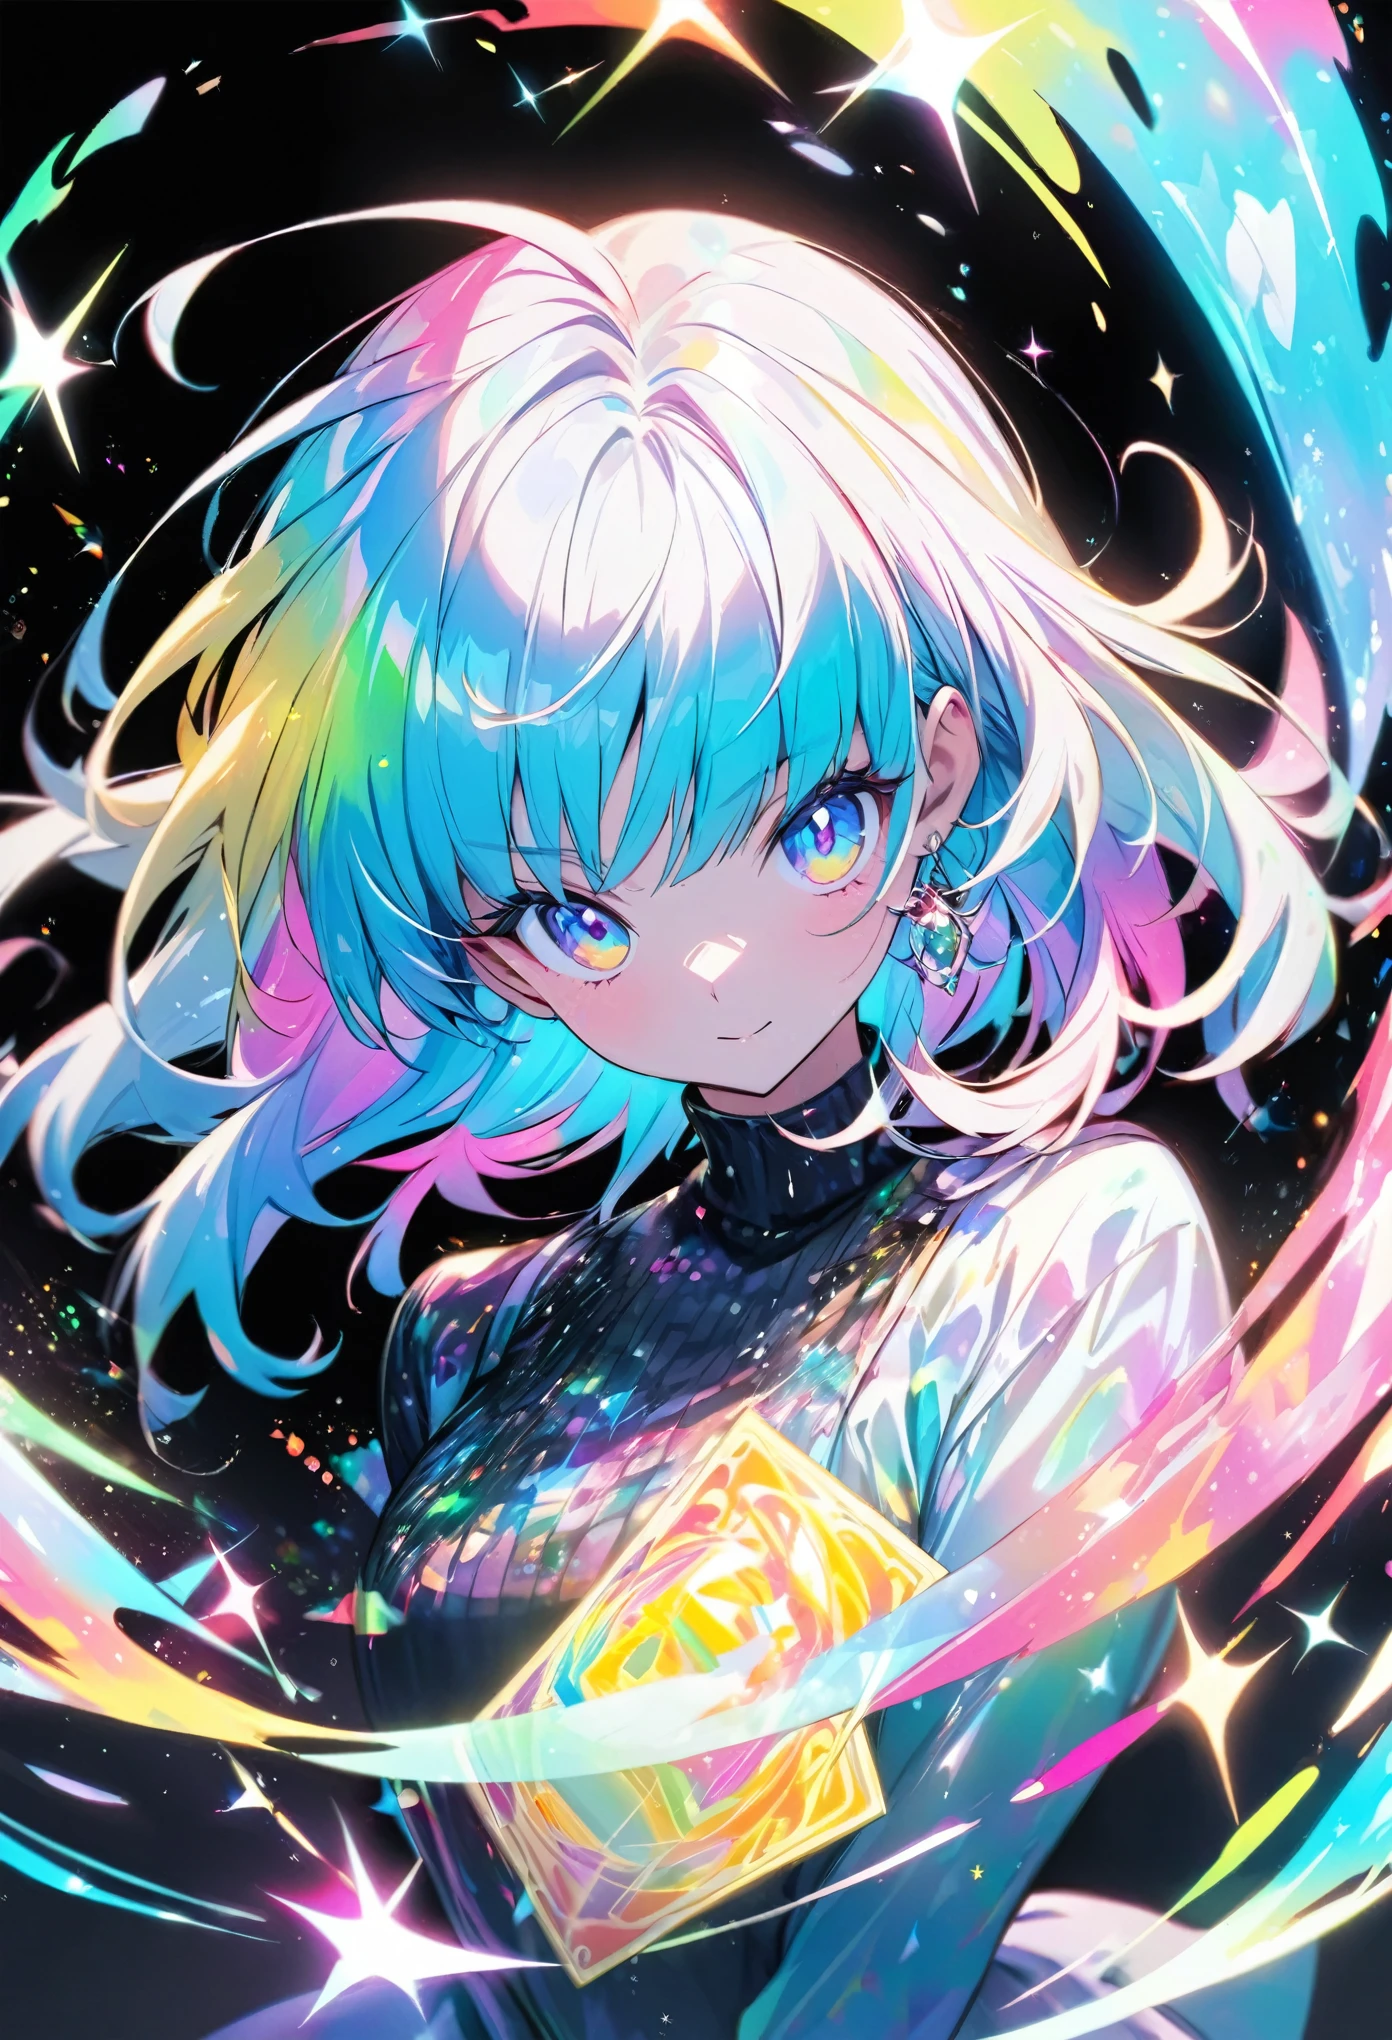 Eine hochwertige Hologrammkarte mit einem Mädchen im Anime-Stil, mit Glitzer, Perlmutt, und ein schwarzer Hintergrund um die Karte, klare Färbung, und bunt